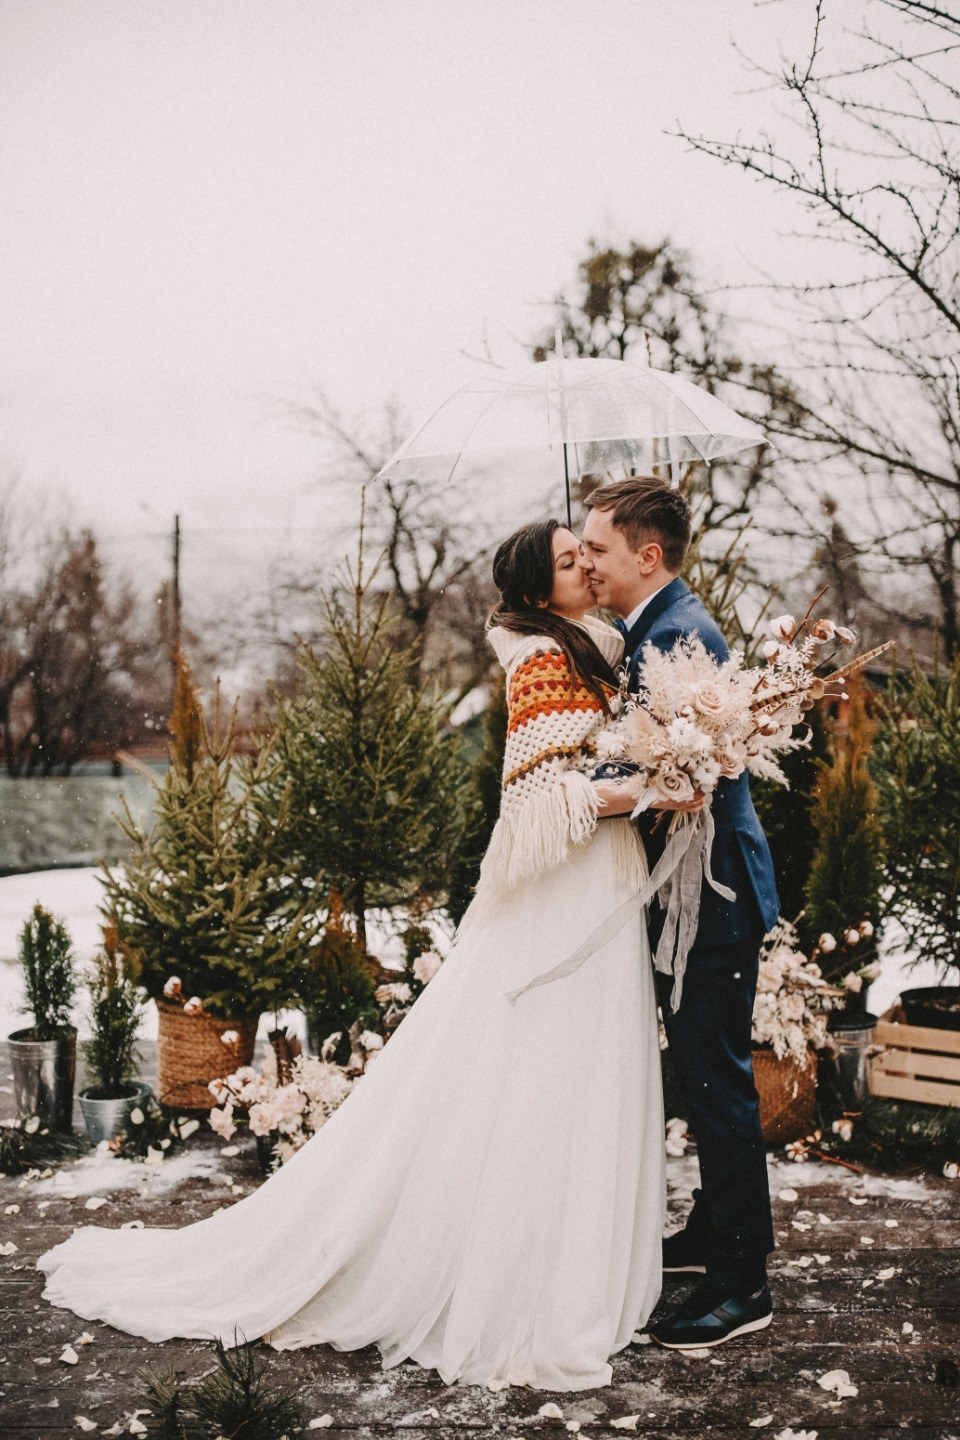 ФОТО ИЗ СТАТЬИ: Любовь в снежных горах: уютная свадьба в Сочи